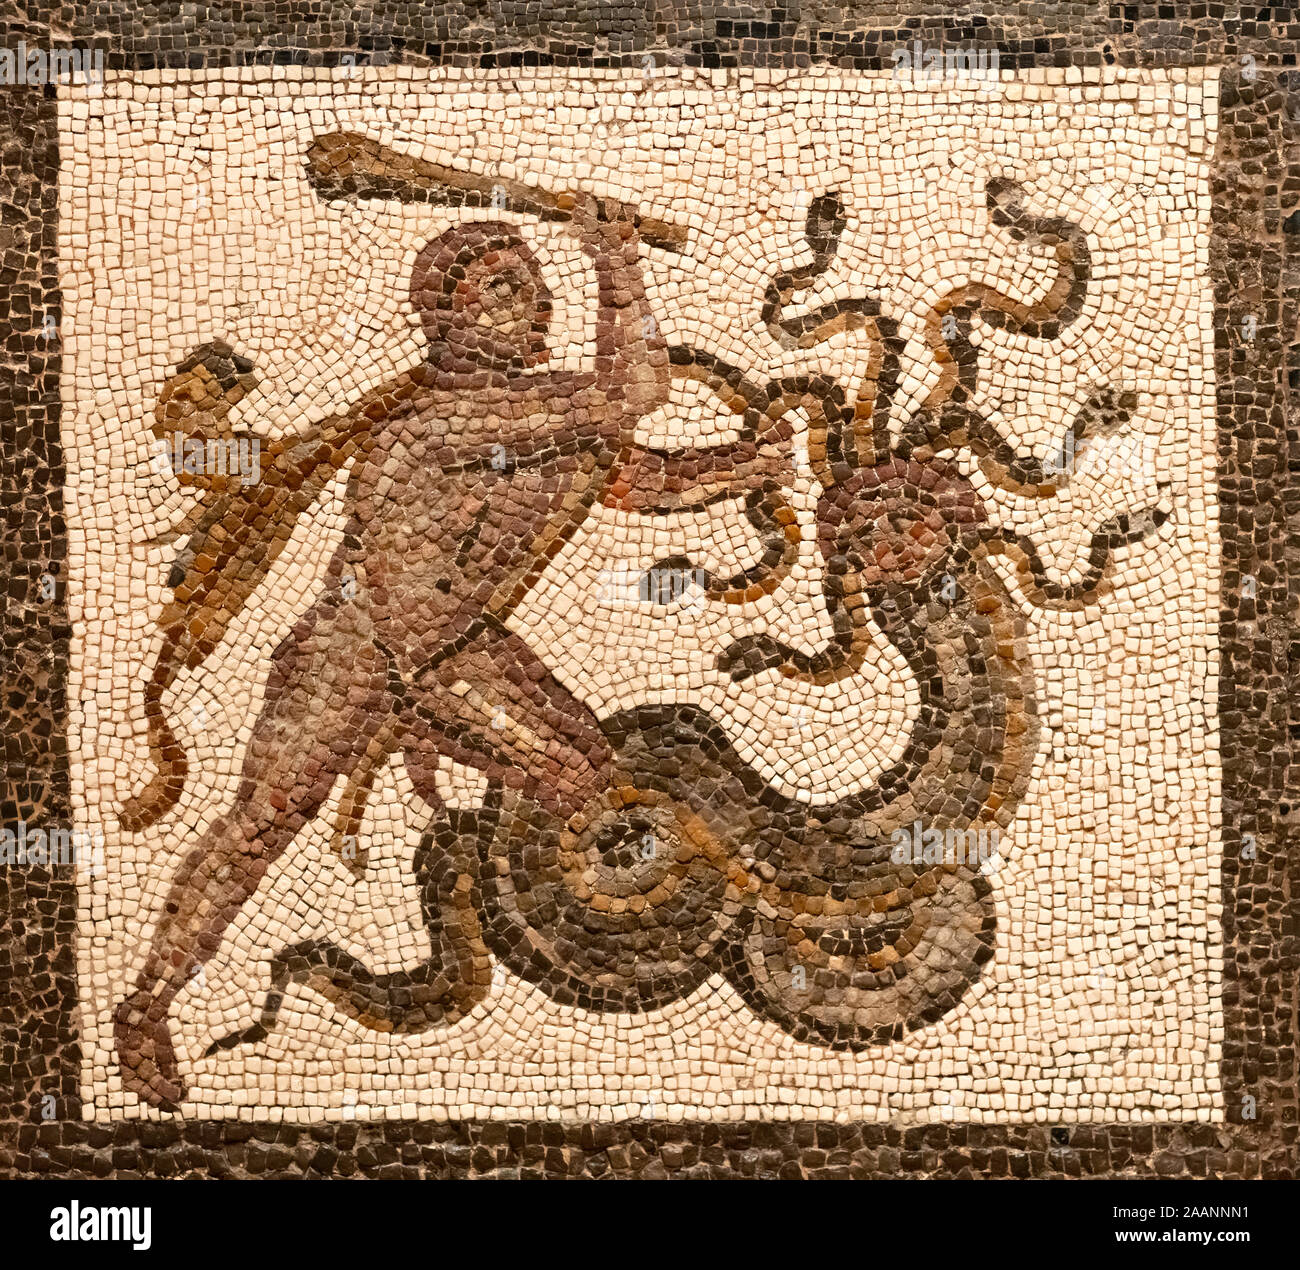 Mosaïque romaine représentant un dieu hercules le combat à la moster, schéma de couleur brune sur un fond blanc petites tuiles Banque D'Images